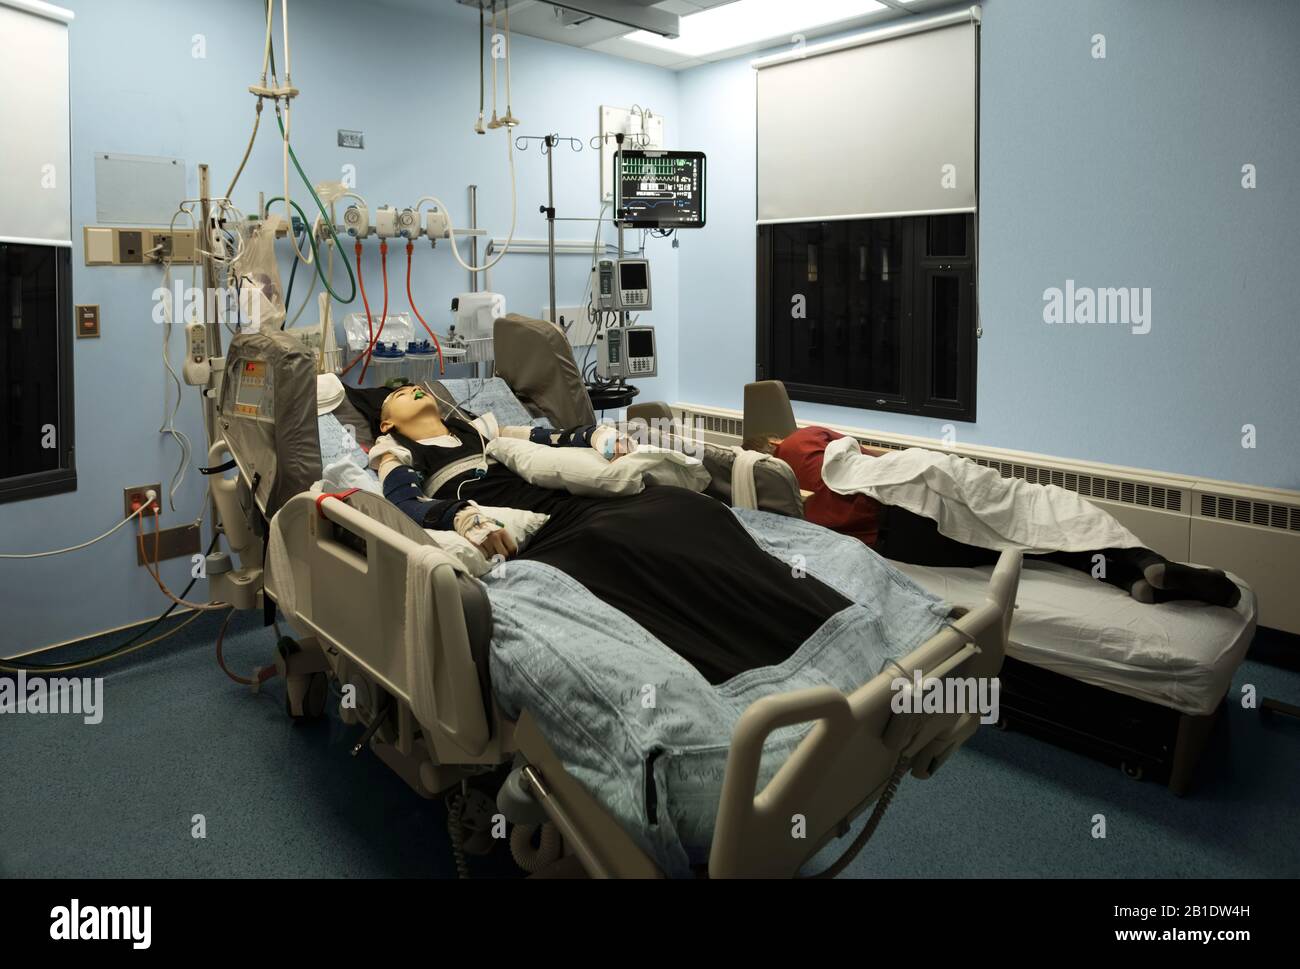 Père fatigué dormant à côté de l'inconscient handicapé fils dans le lit d'hôpital la nuit. L'enfant est muni d'un tube respiratoire. Banque D'Images